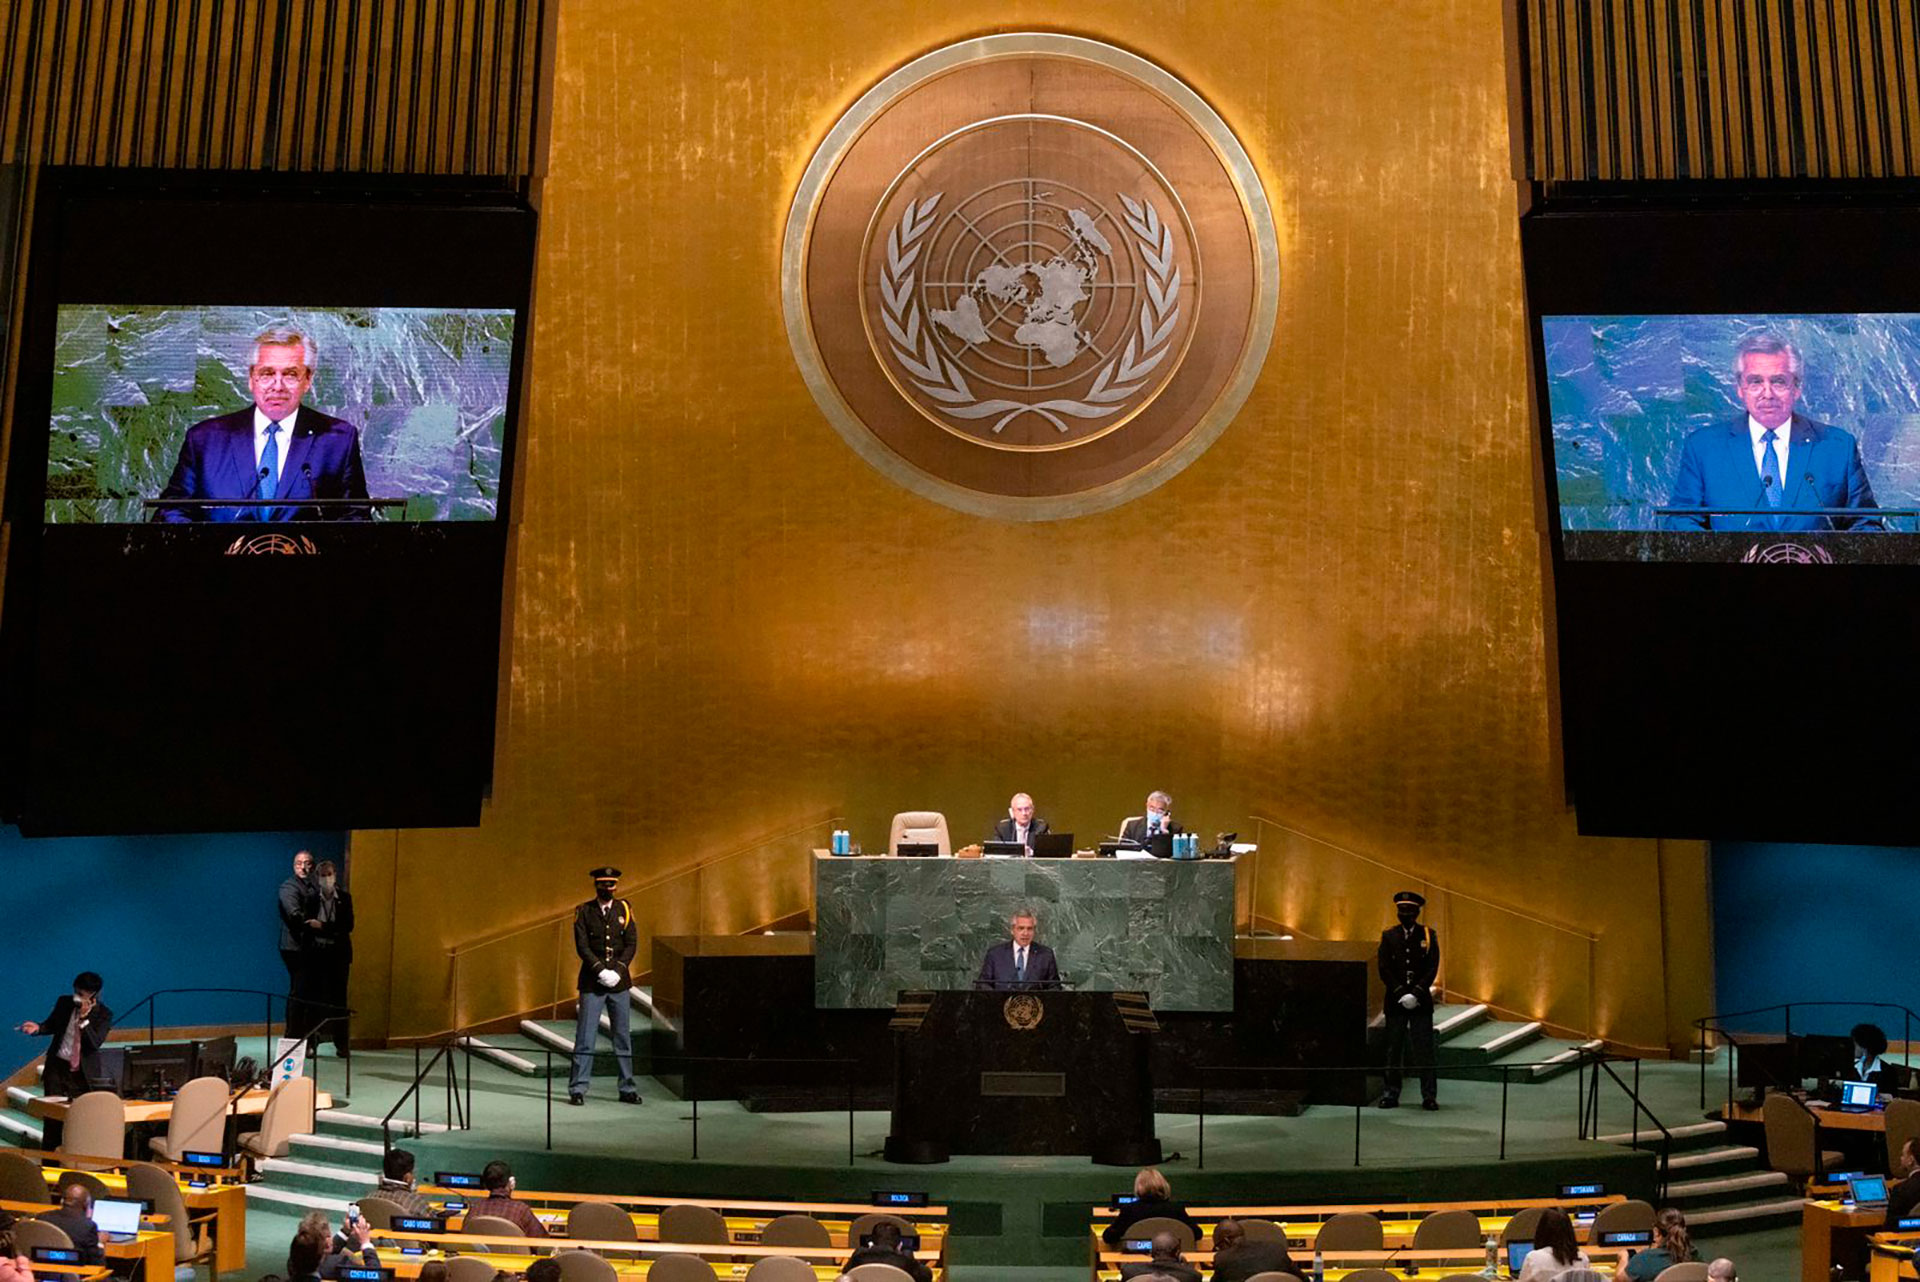 El Presidente intervino en el 77º Período de sesiones de la Asamblea General de la ONU
